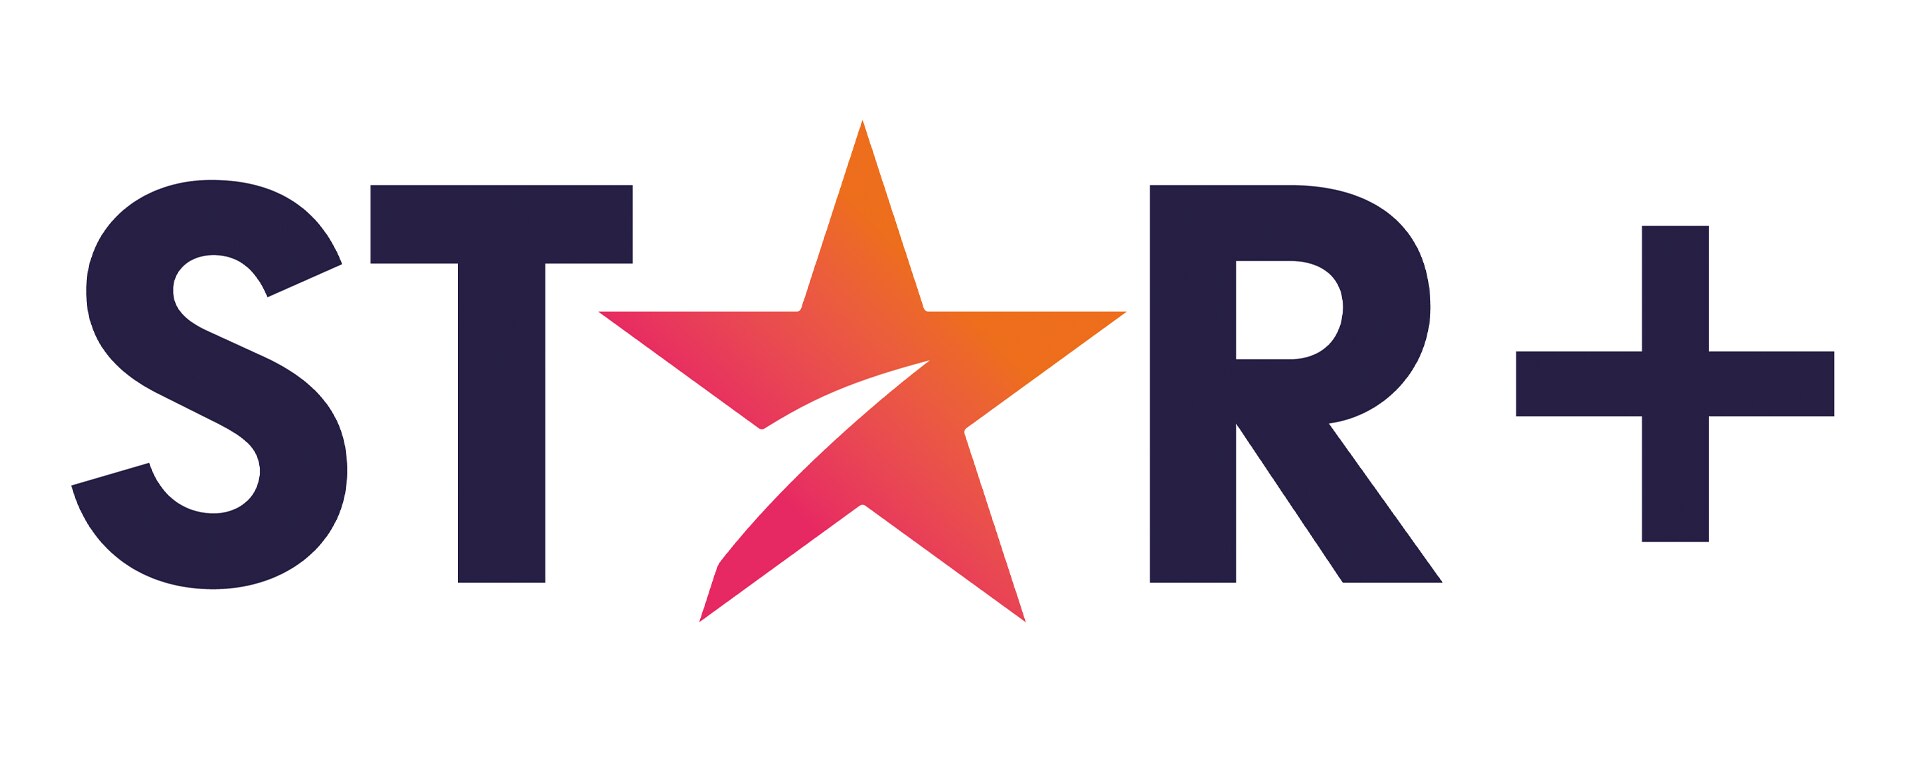 STAR+, el nuevo servicio de streaming que transformará la manera de vivir  el entretenimiento y el deporte, llegará a Latinoamérica el 31 de agosto. |  Star Latinoamérica